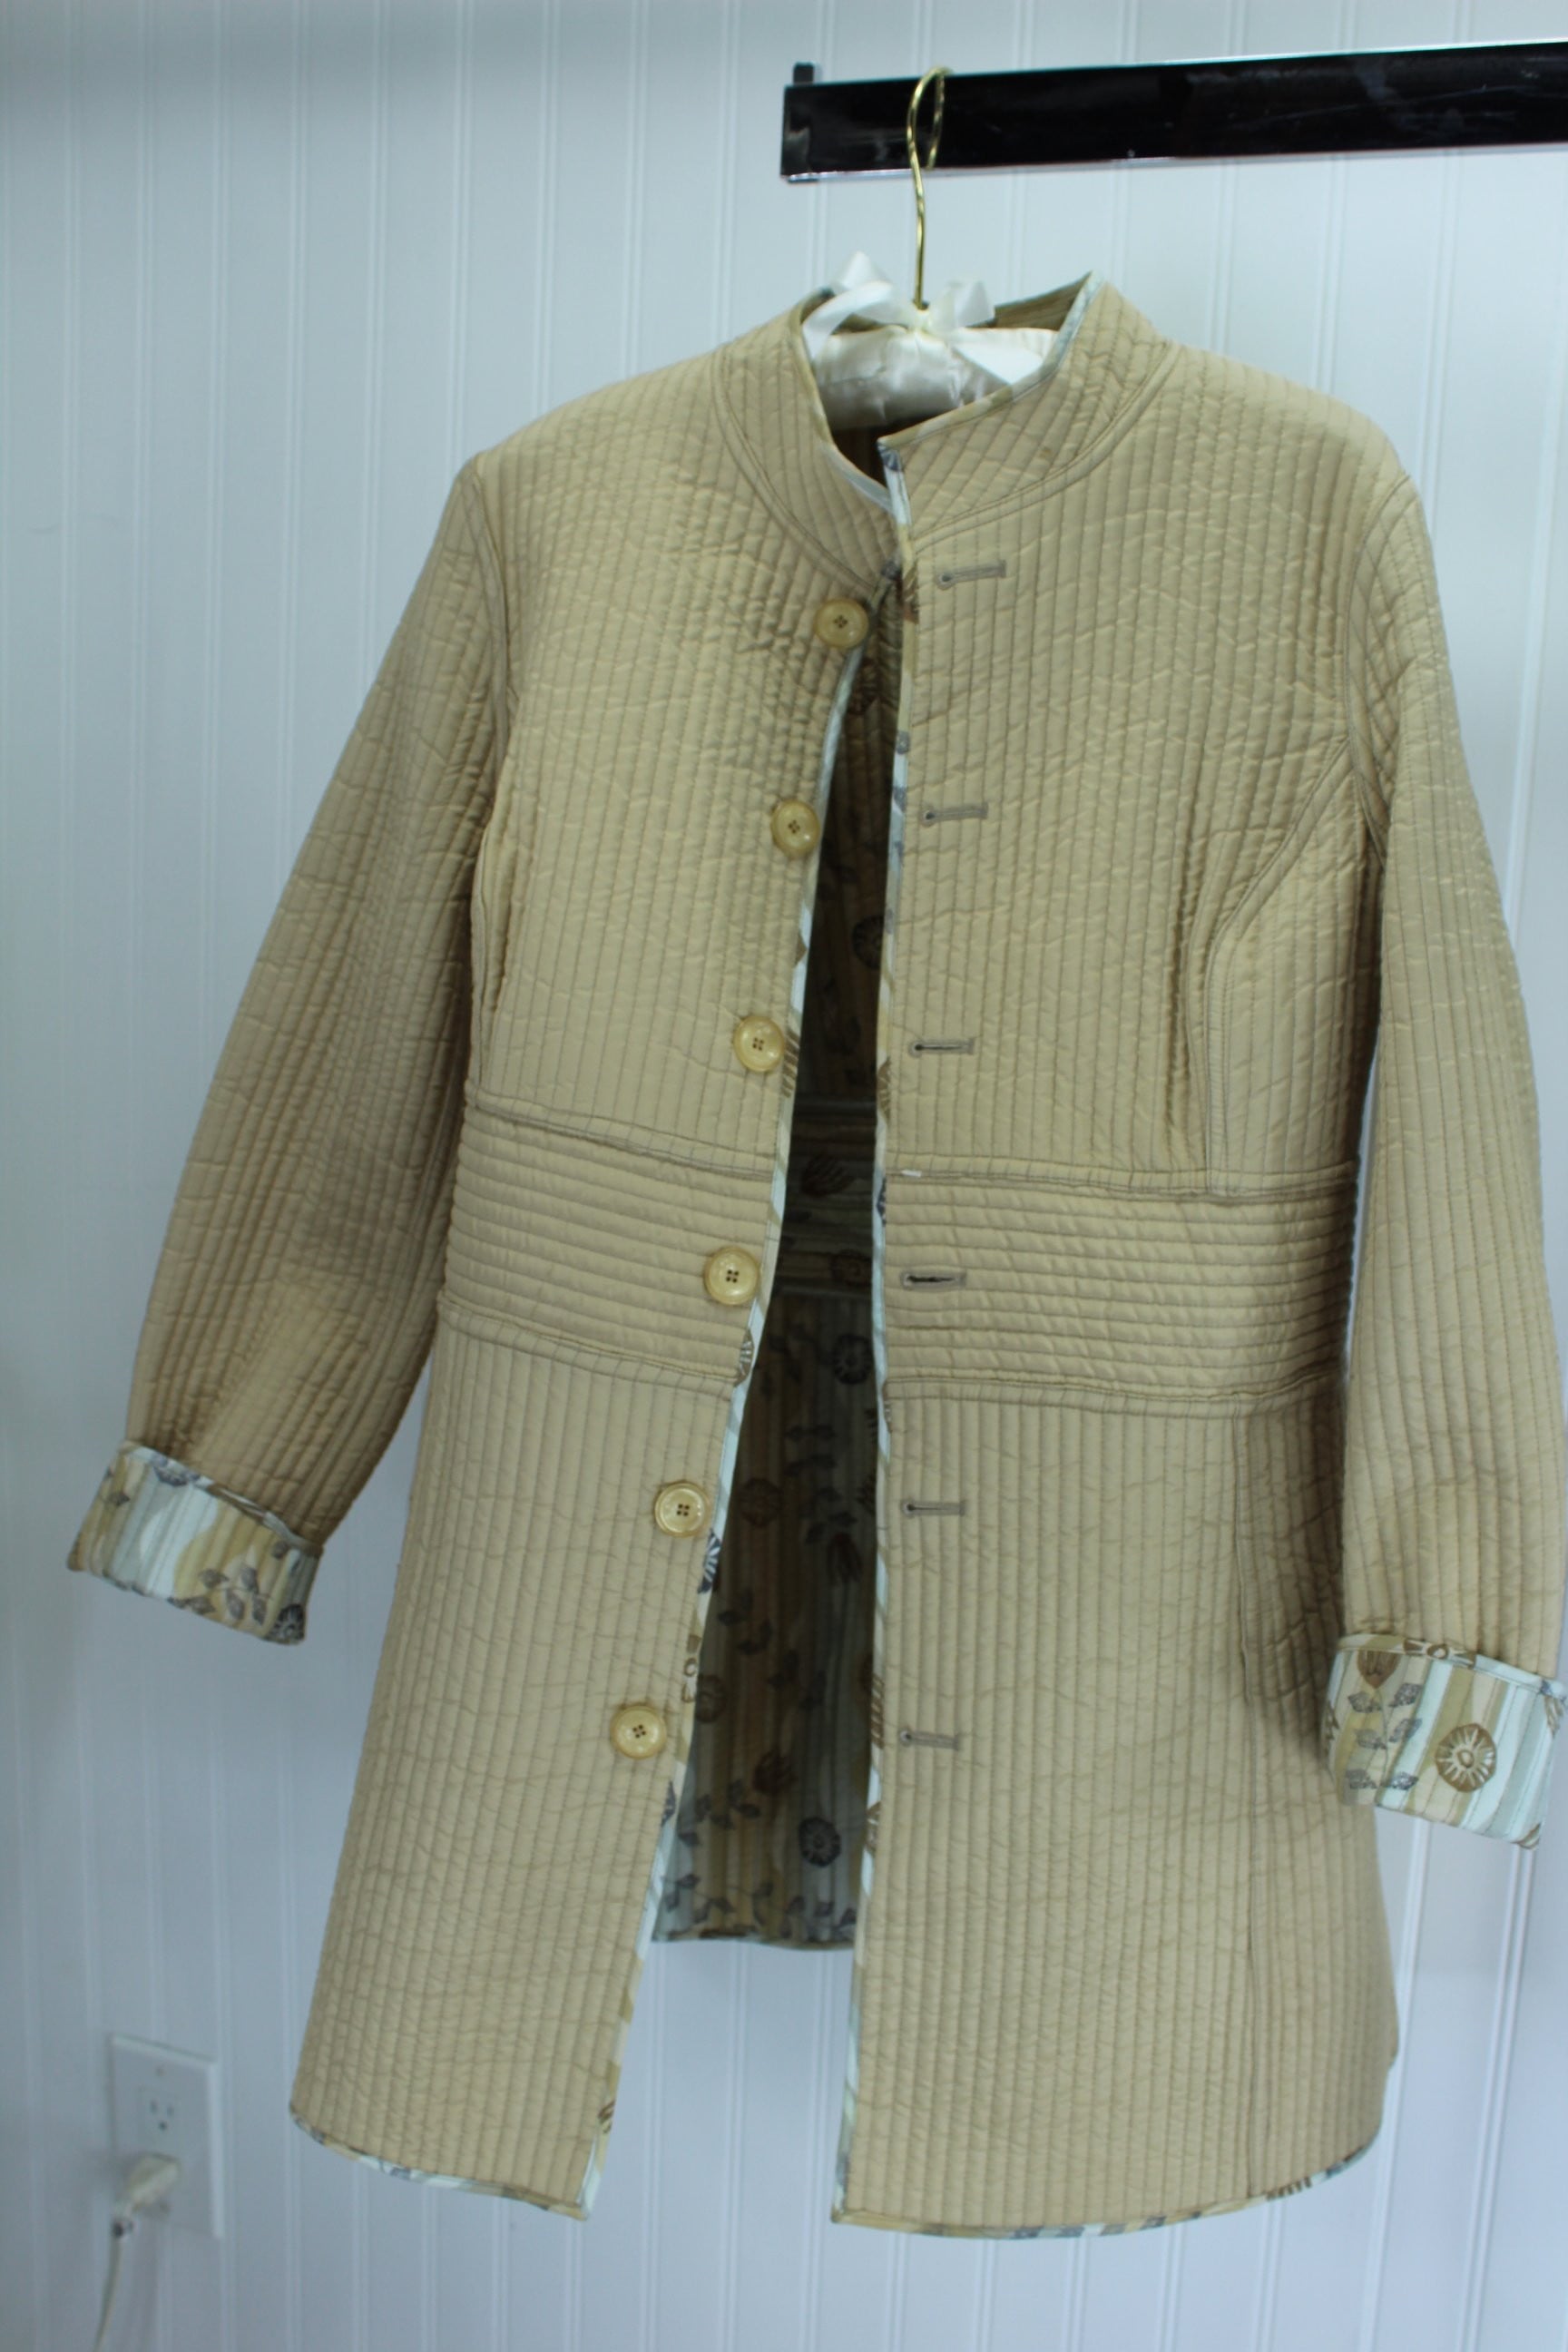 SIGRID OLSEN Reversible Quilted Long Jacket Browns Beige Silk Poly Hand Wash orig label